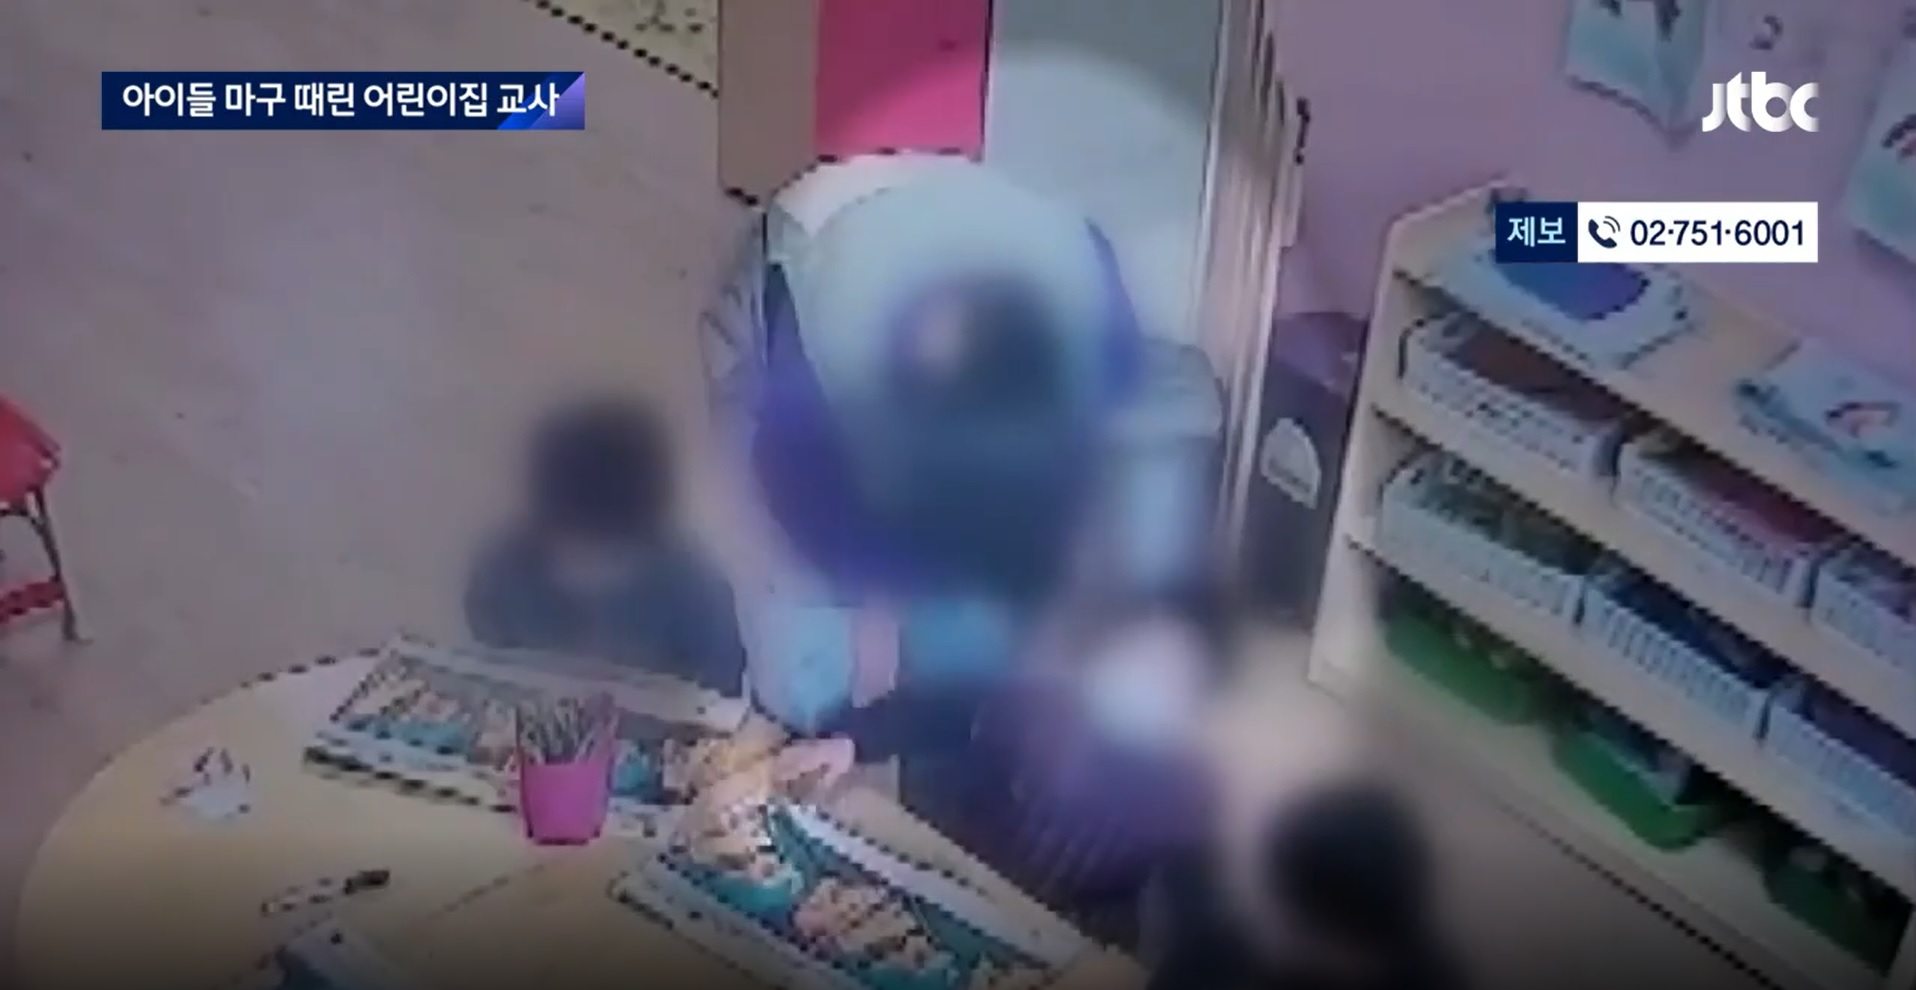 대전의 한 어린이집 교사가 아이들을 폭행하고 학대한 혐의로 경찰에 입건됐다. JTBC 보도 캡처